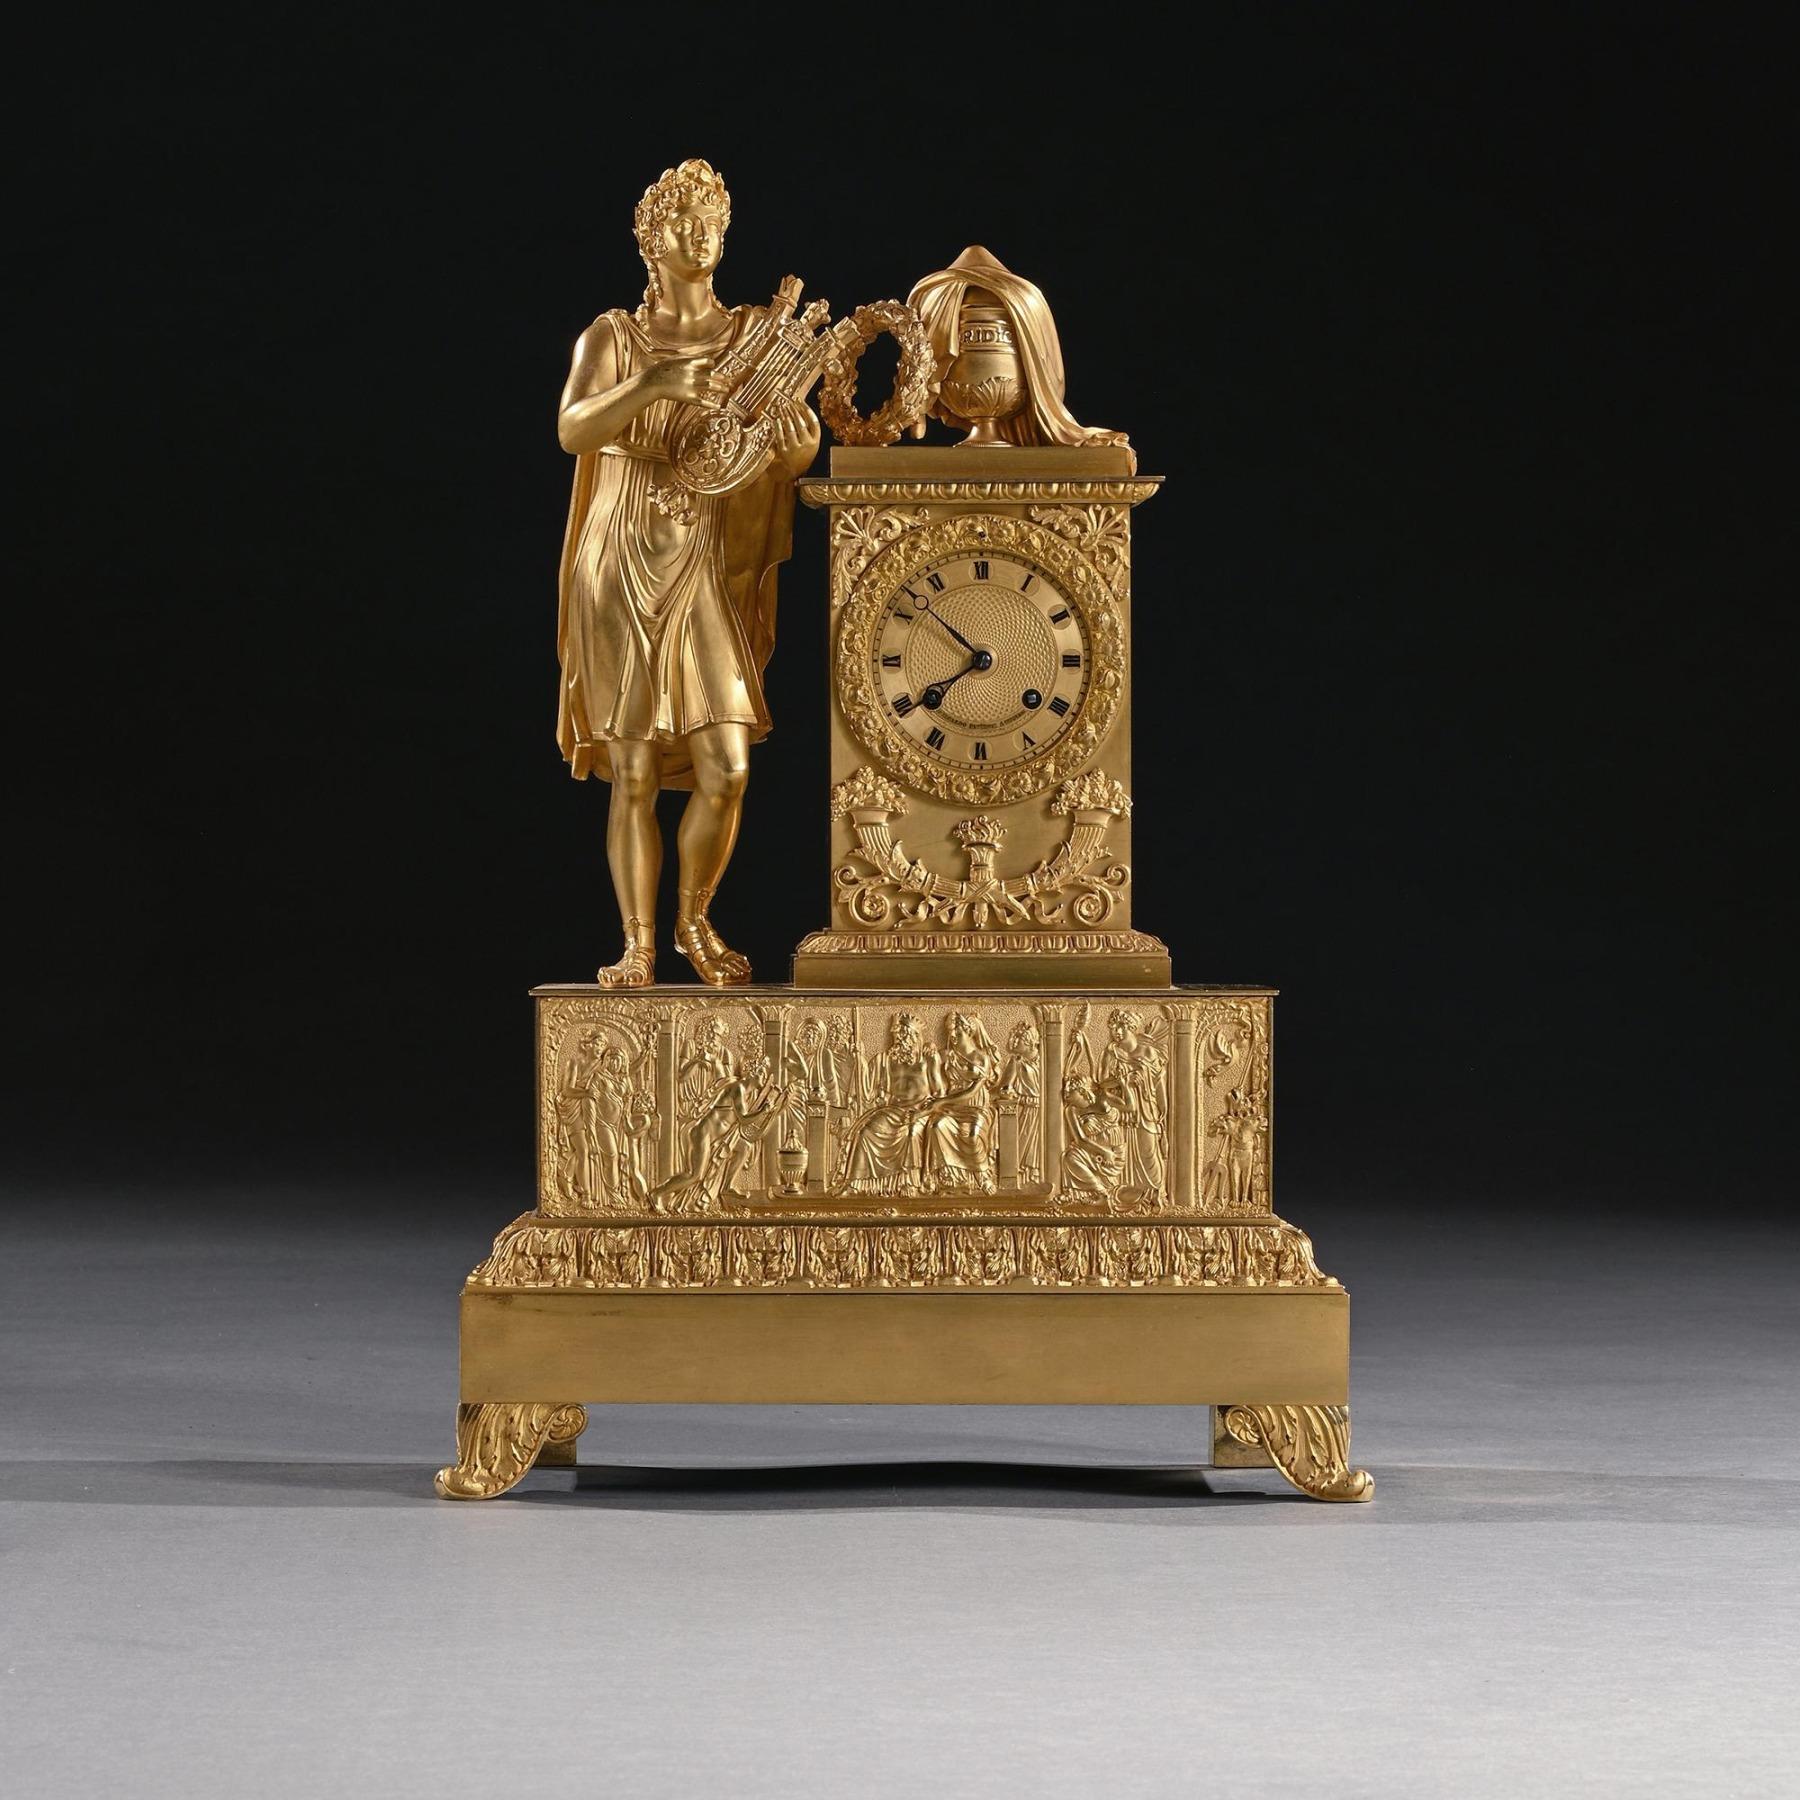 Une grande et impressionnante pendule de cheminée en bronze doré de la période Empire français, d'une qualité et d'une couleur exceptionnelles.

Français (peut-être vendu au détail en Italie) - Circa 1820.

Le boîtier en bronze doré, finement ciselé